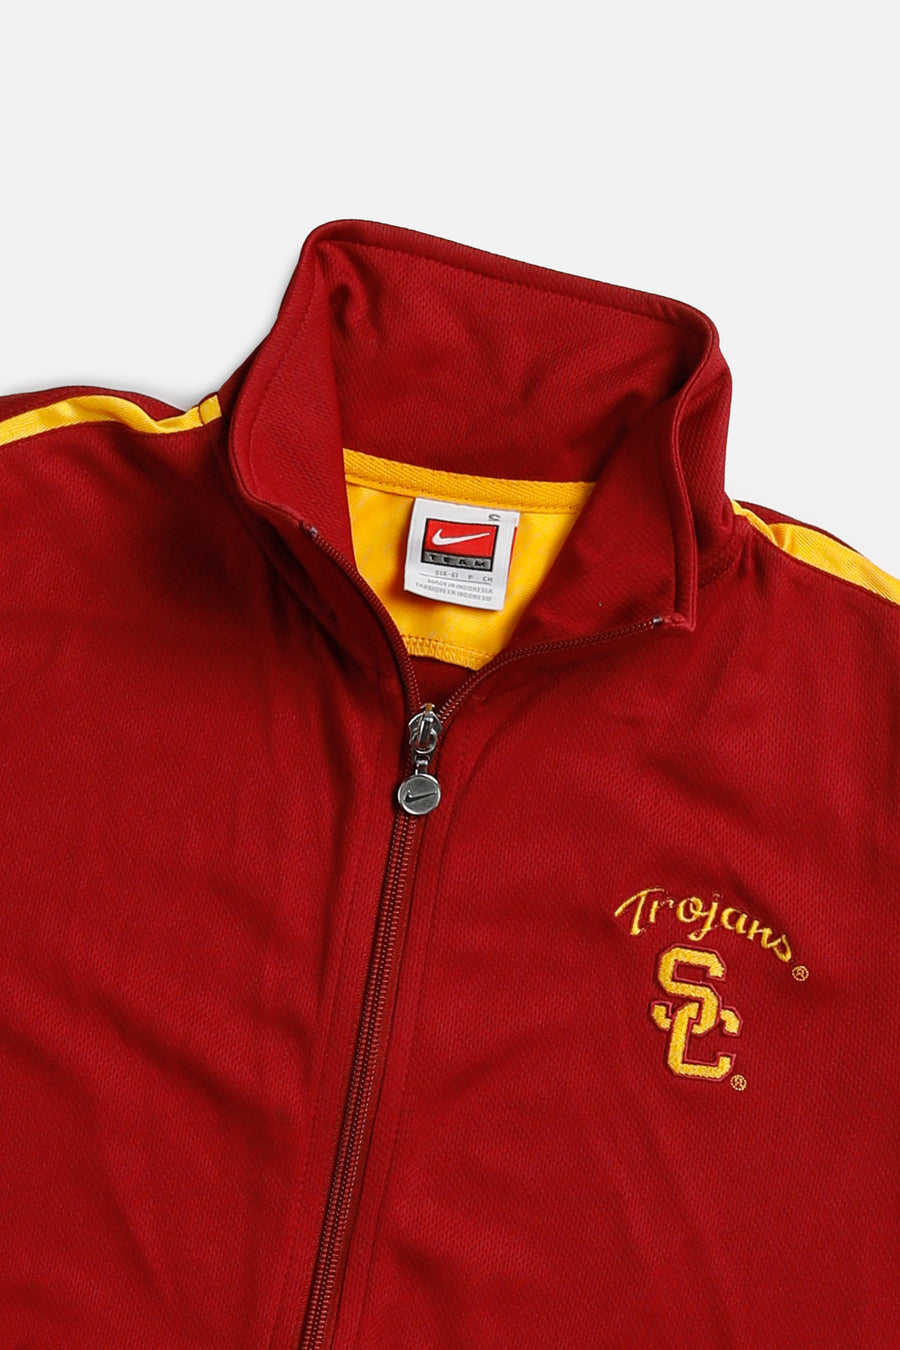 Vintage Nike USC Trojans Track Jacket - Women's S